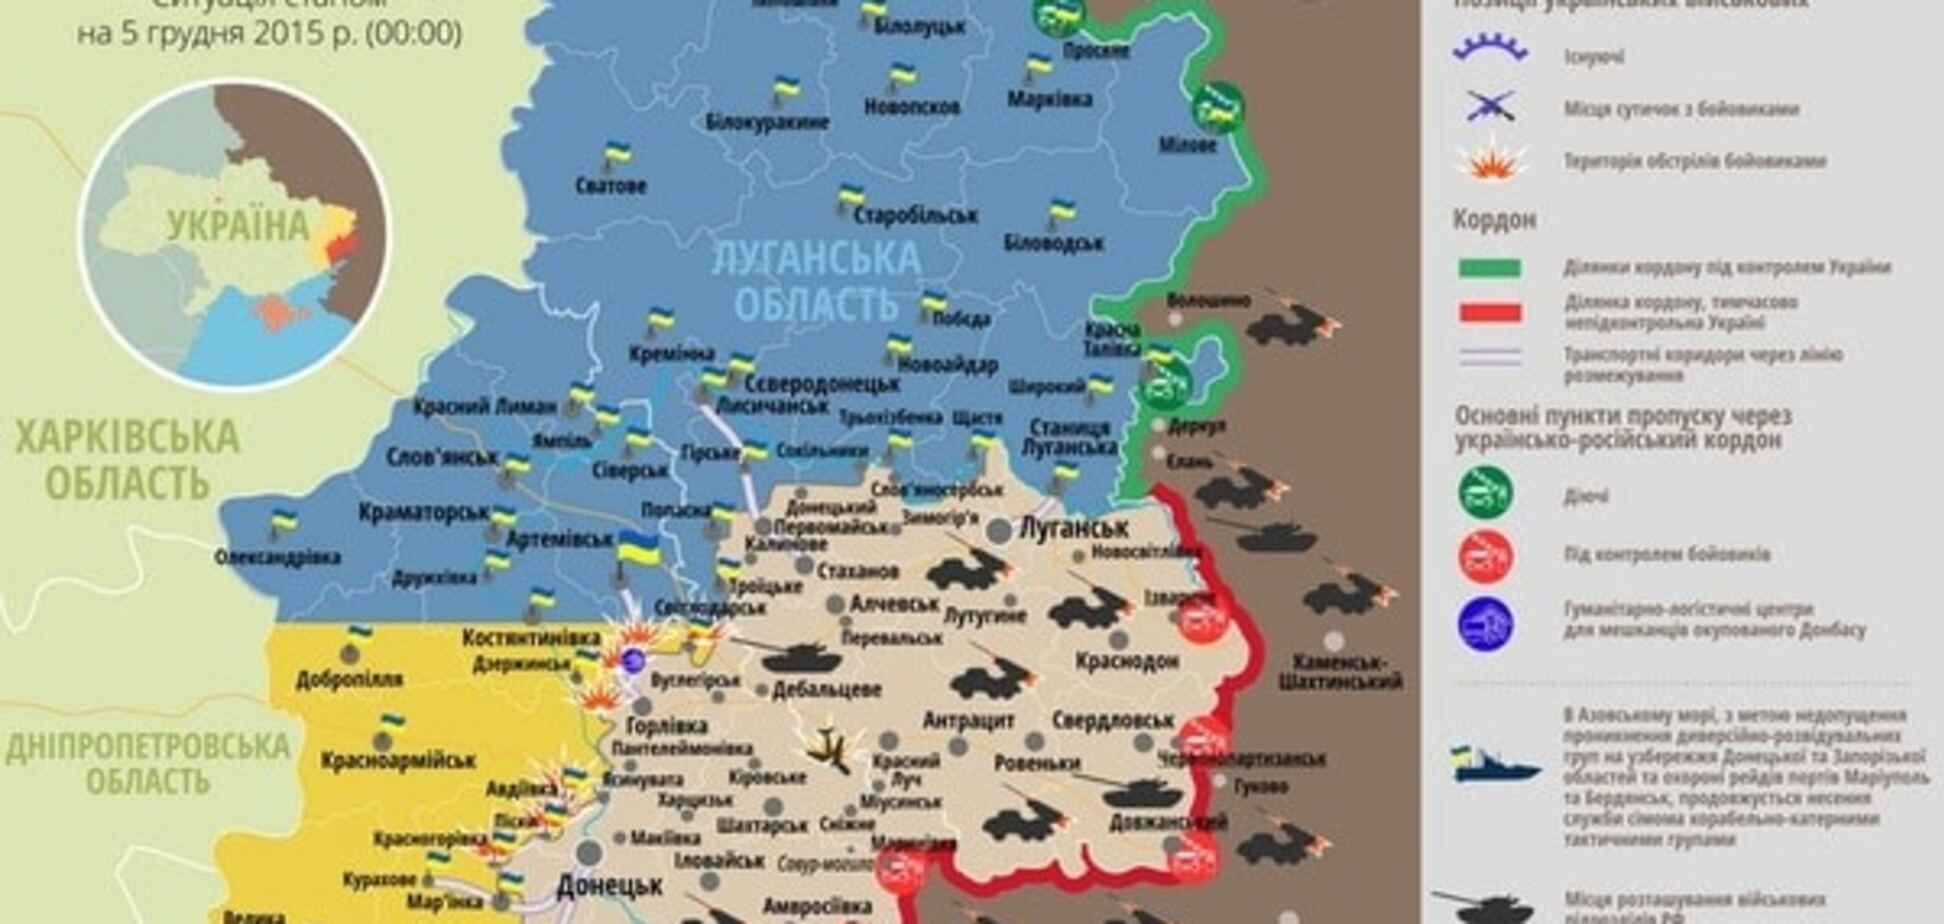 Сили АТО зазнали втрат на Донбасі: опублікована карта - 5 грудня 2015